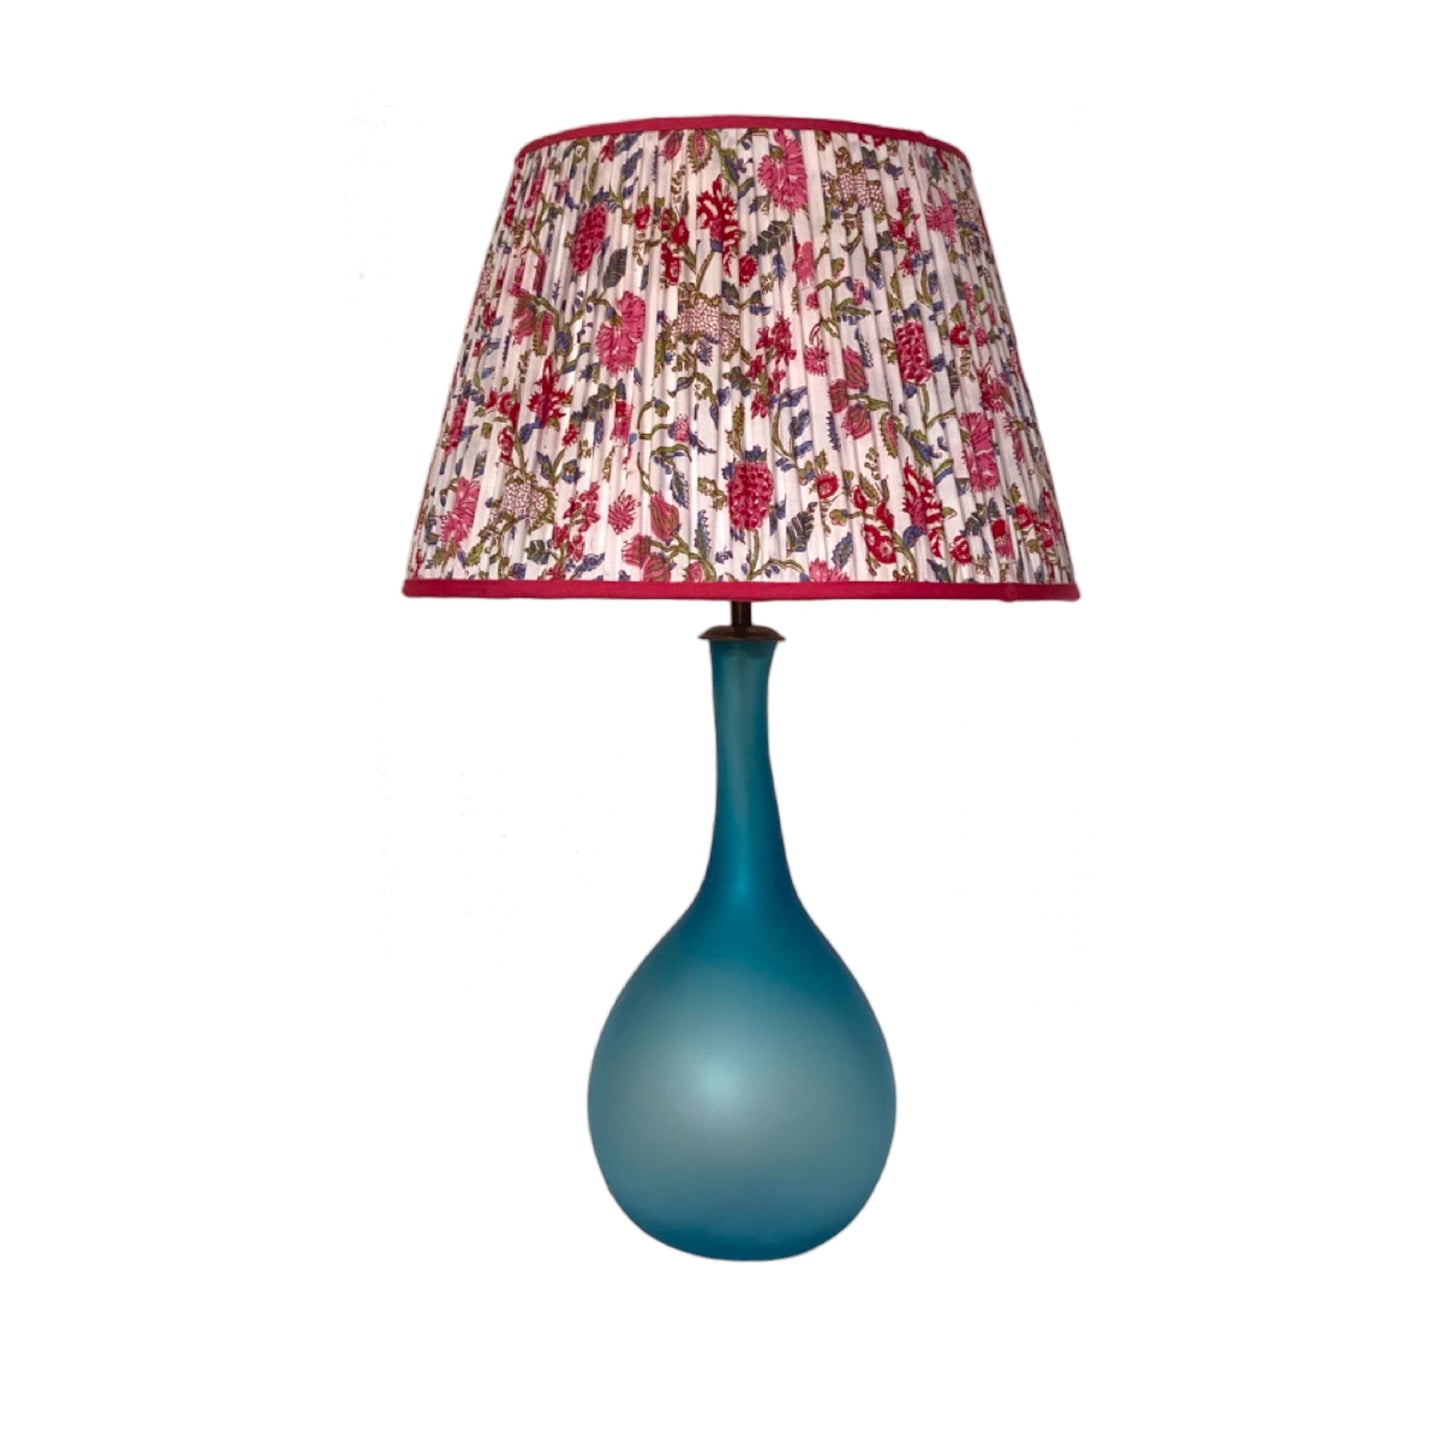 Rosy posy lampshade on aakriti lamp